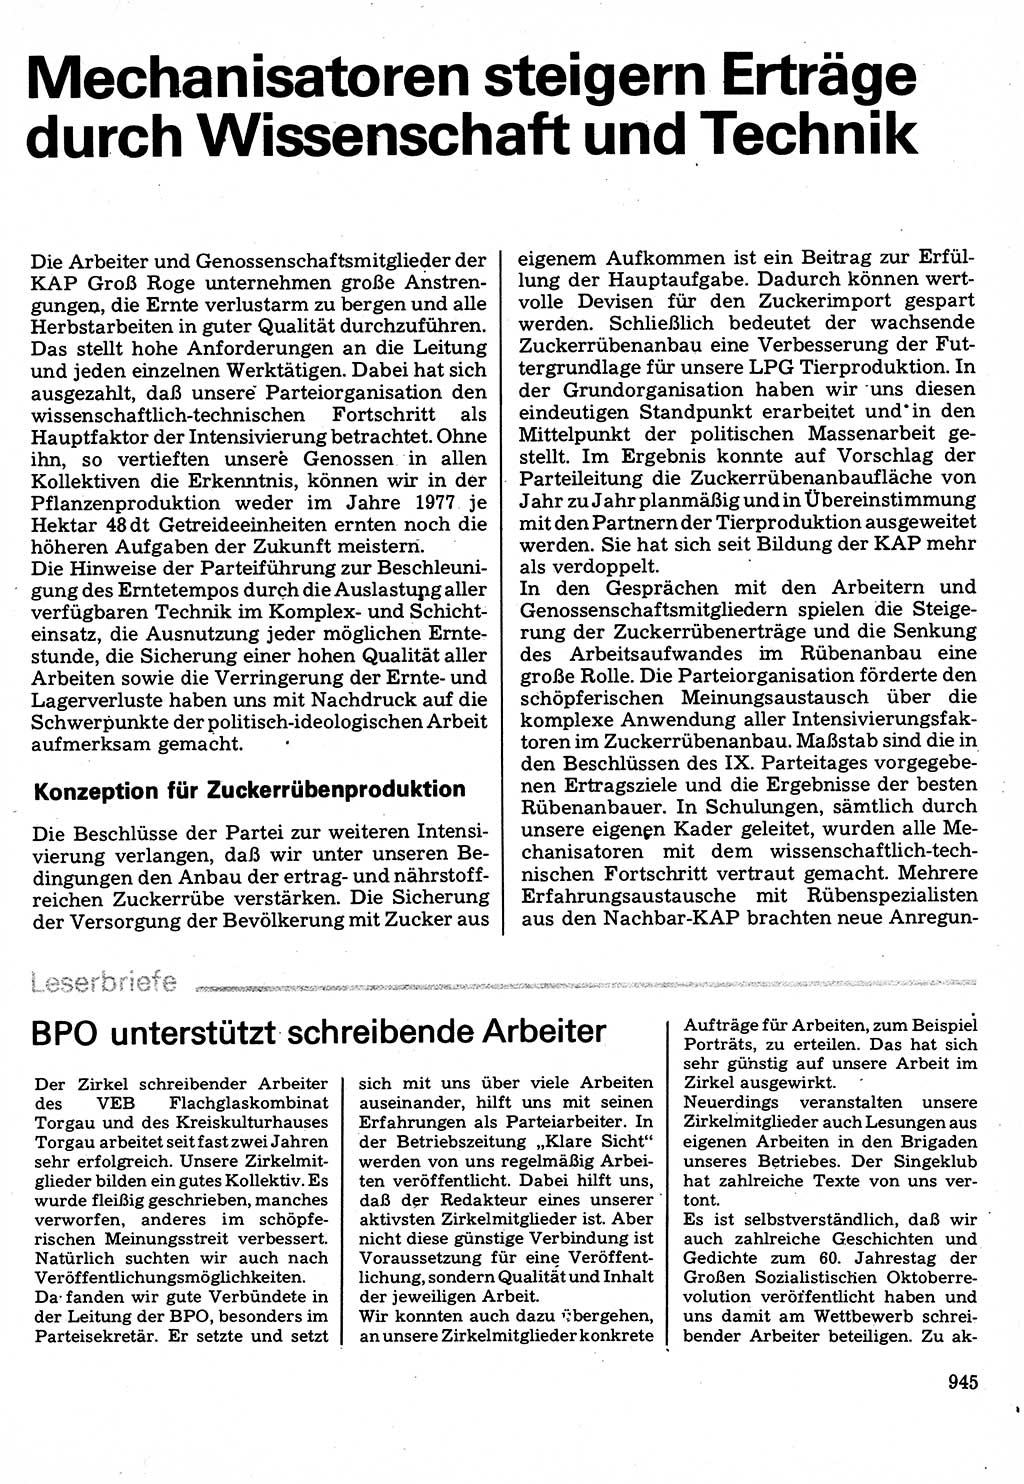 Neuer Weg (NW), Organ des Zentralkomitees (ZK) der SED (Sozialistische Einheitspartei Deutschlands) für Fragen des Parteilebens, 32. Jahrgang [Deutsche Demokratische Republik (DDR)] 1977, Seite 945 (NW ZK SED DDR 1977, S. 945)